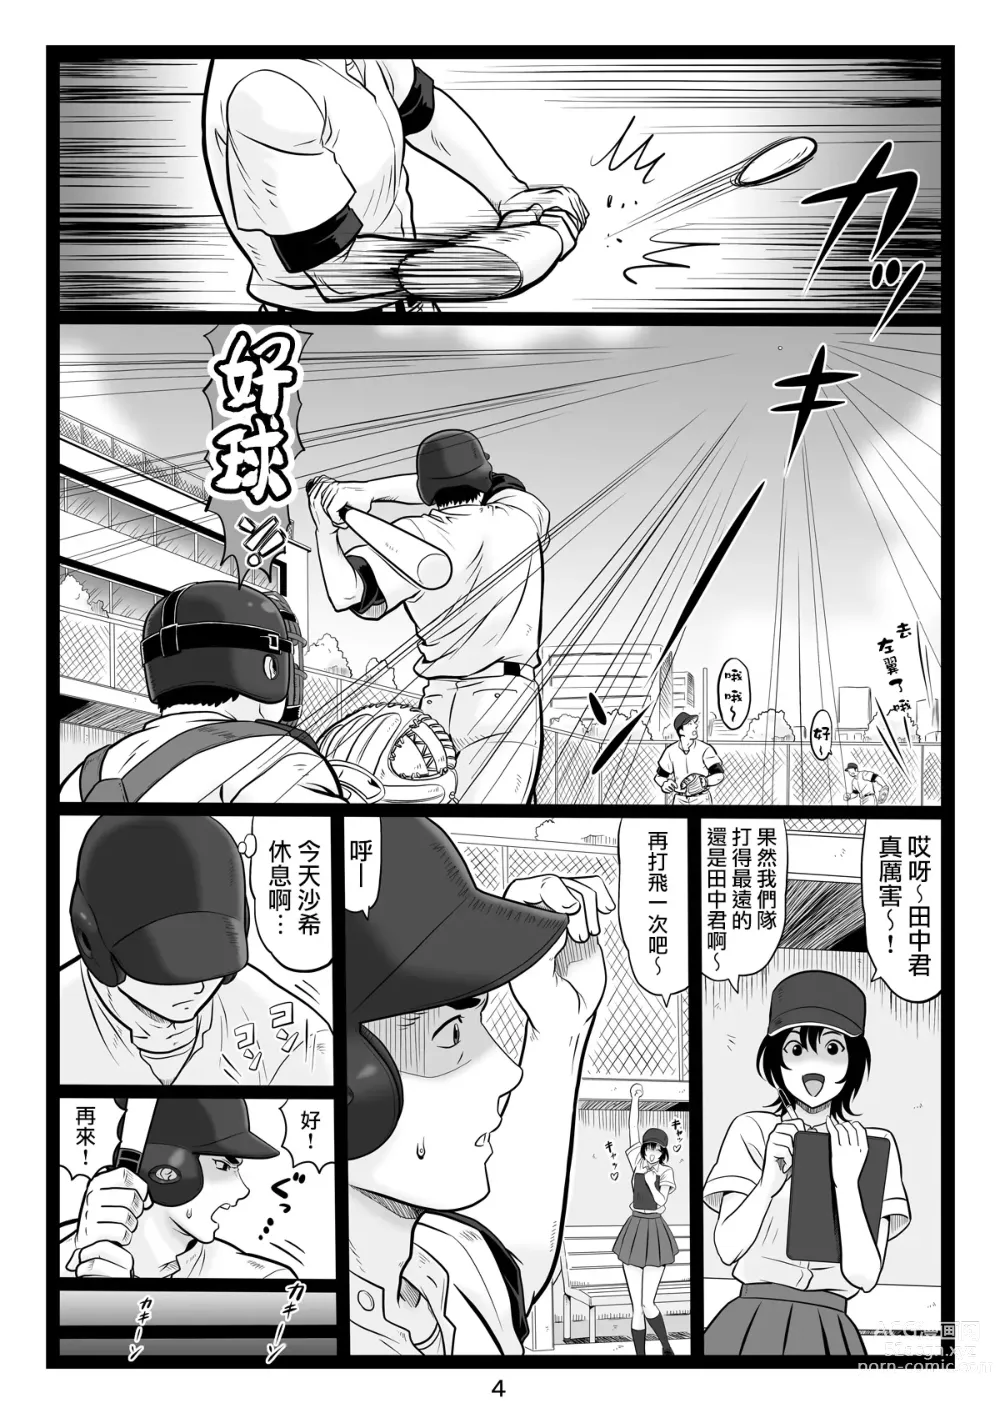 Page 4 of doujinshi Tawawa de Akarui Yakyuubu Manager ga Inshitsu na Kyoushi no Wana ni... Sonogo...